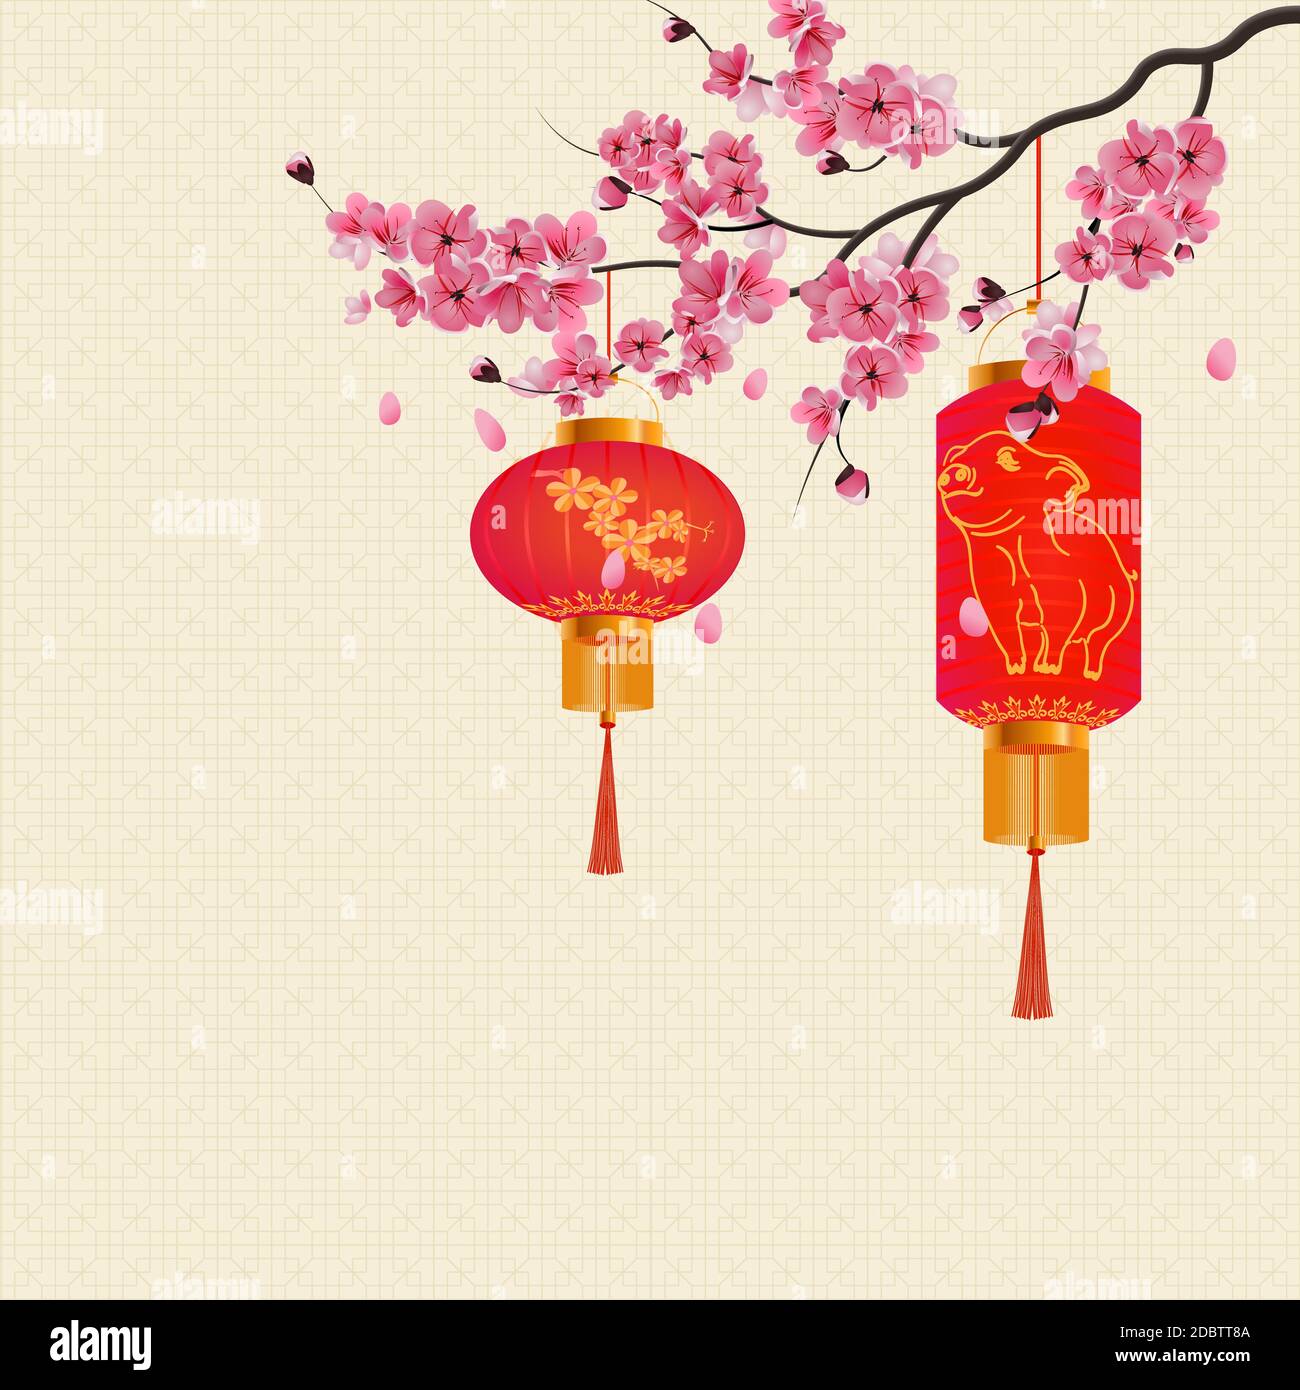 Das chinesische Neujahr. Zwei rote Lichter auf dem Zweig Kirsche Farbe mit violetten Blüten. Bild von einem Schwein. Vector Illustration Stockfoto